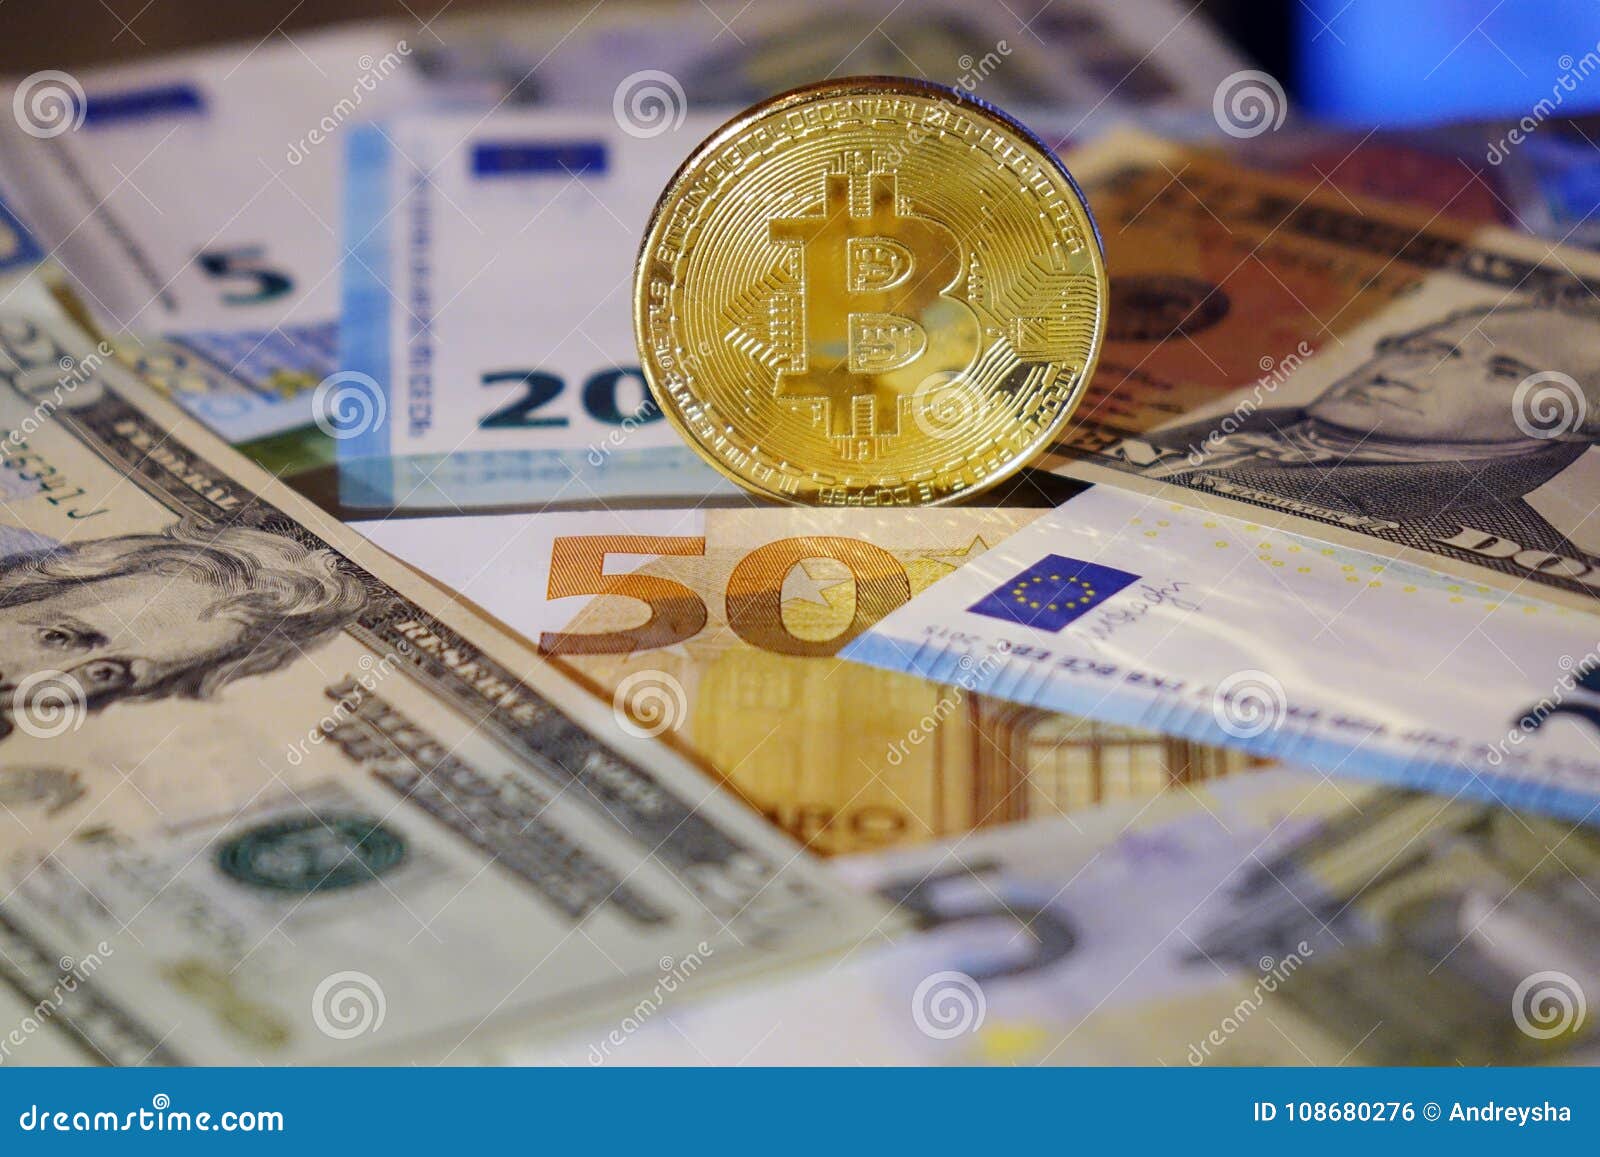 Обменять биткоин на евро самостоятельный майнинг эфира